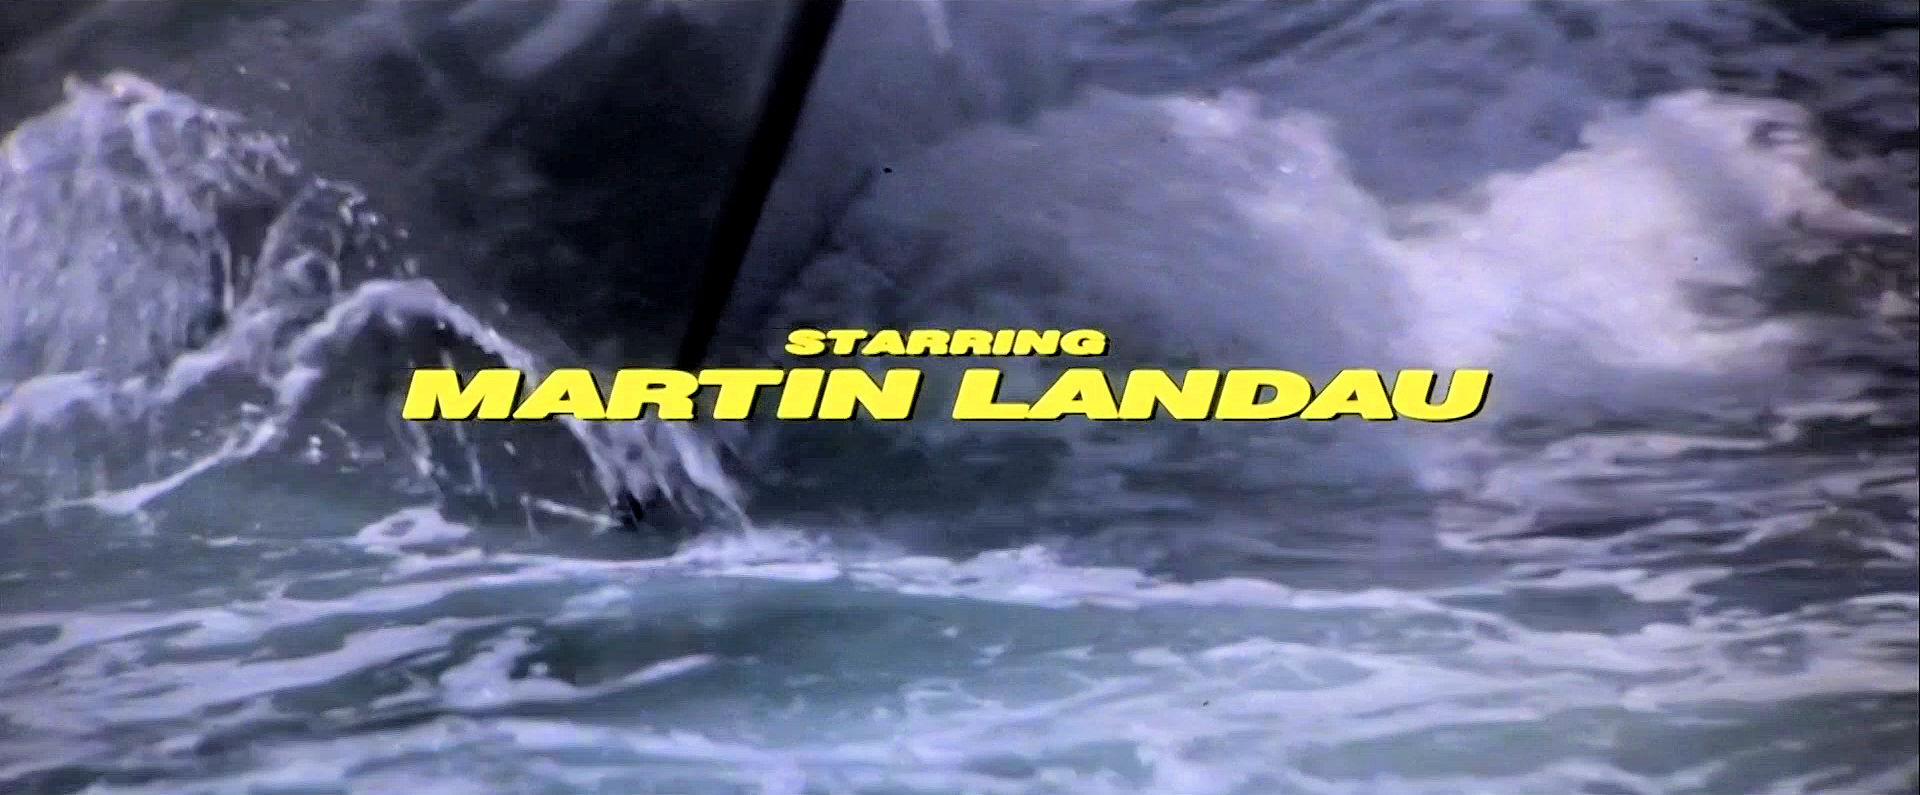 Main title from Meteor (1979) (7). Starring Martin Landau